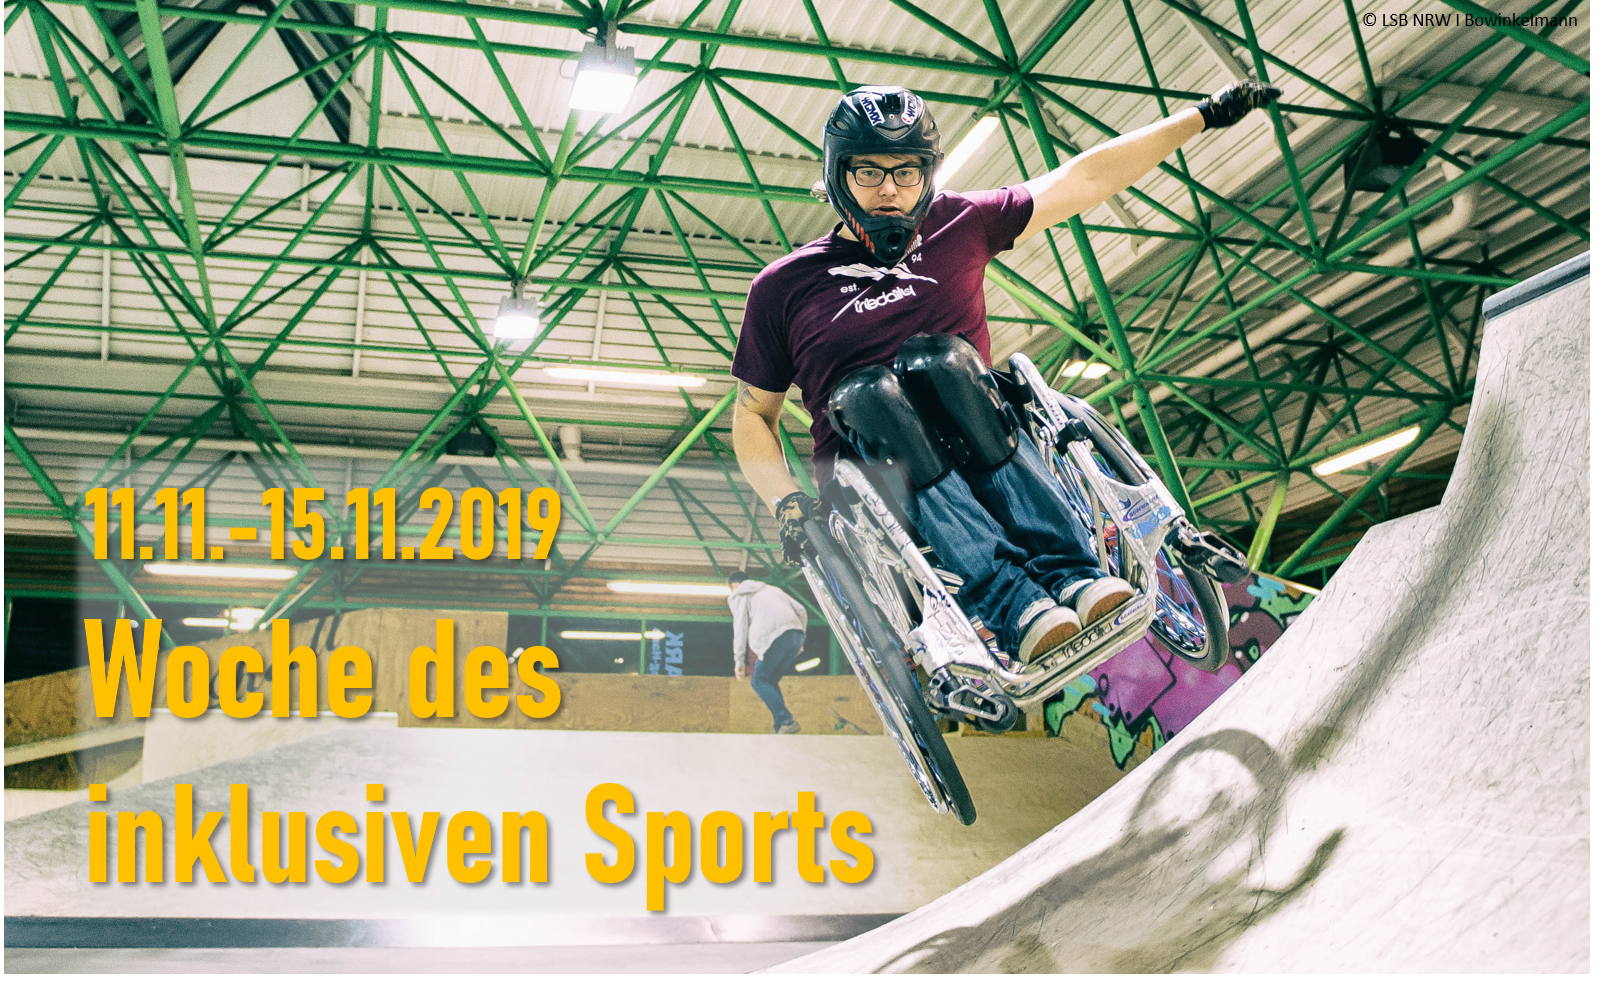 Foto Rollstuhlfahrer in Skatepark mit Beschriftung Woche des inklusiven Sports vom 11.11. bis 15.11.19